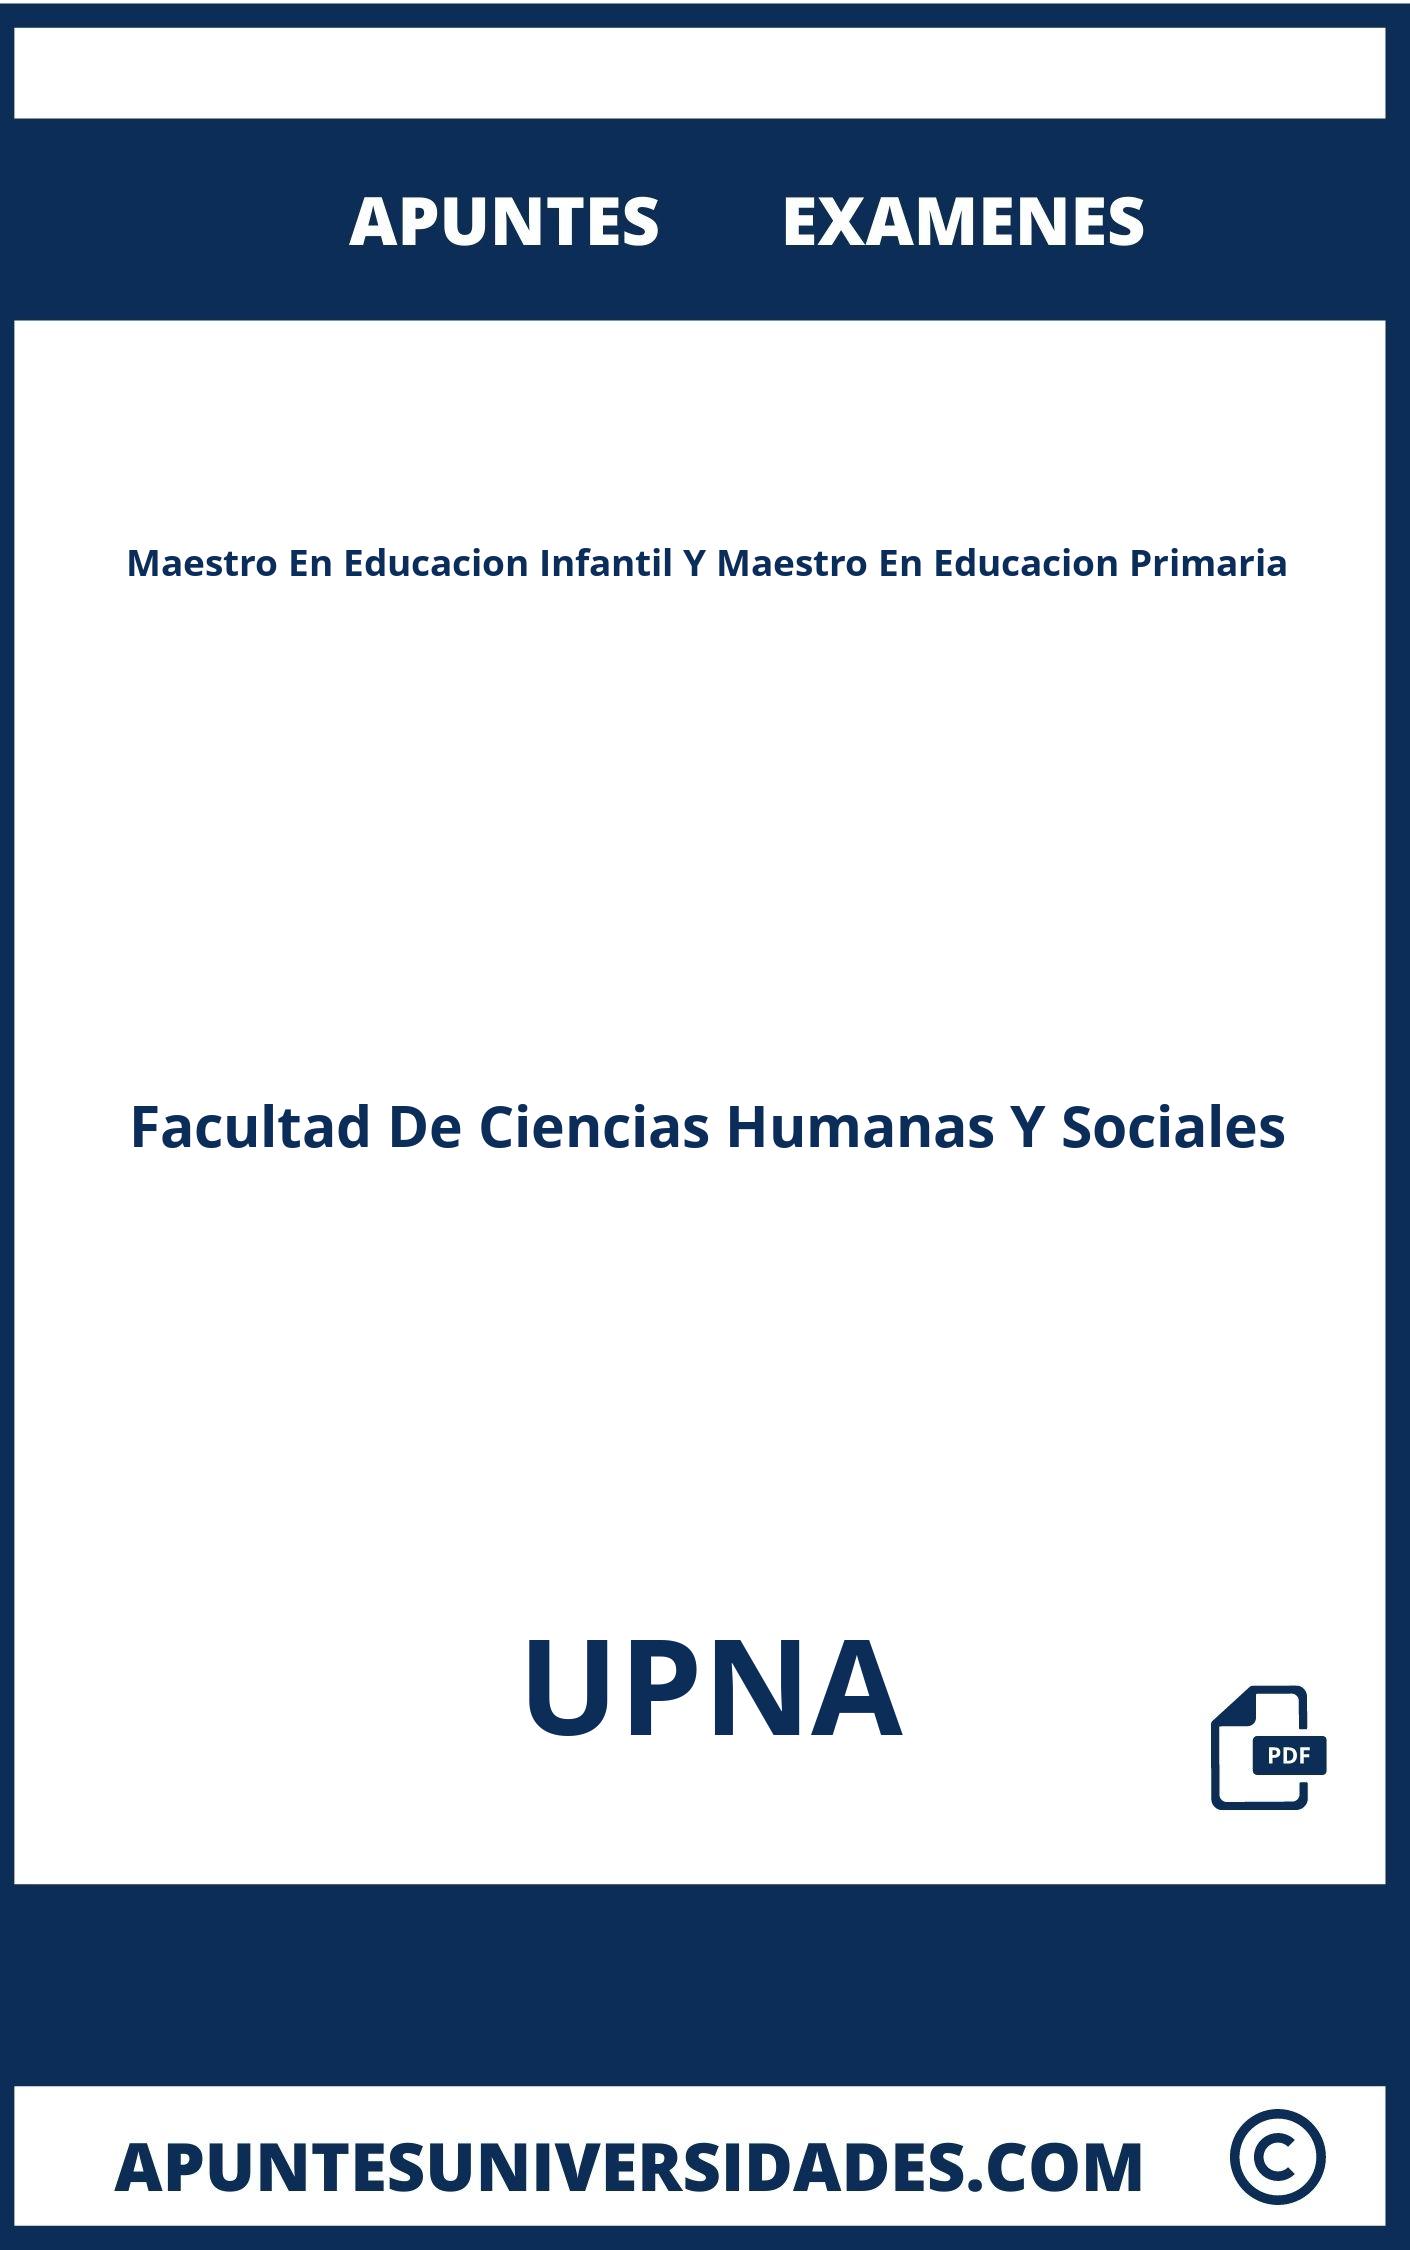 Apuntes y Examenes Maestro En Educacion Infantil Y Maestro En Educacion Primaria UPNA